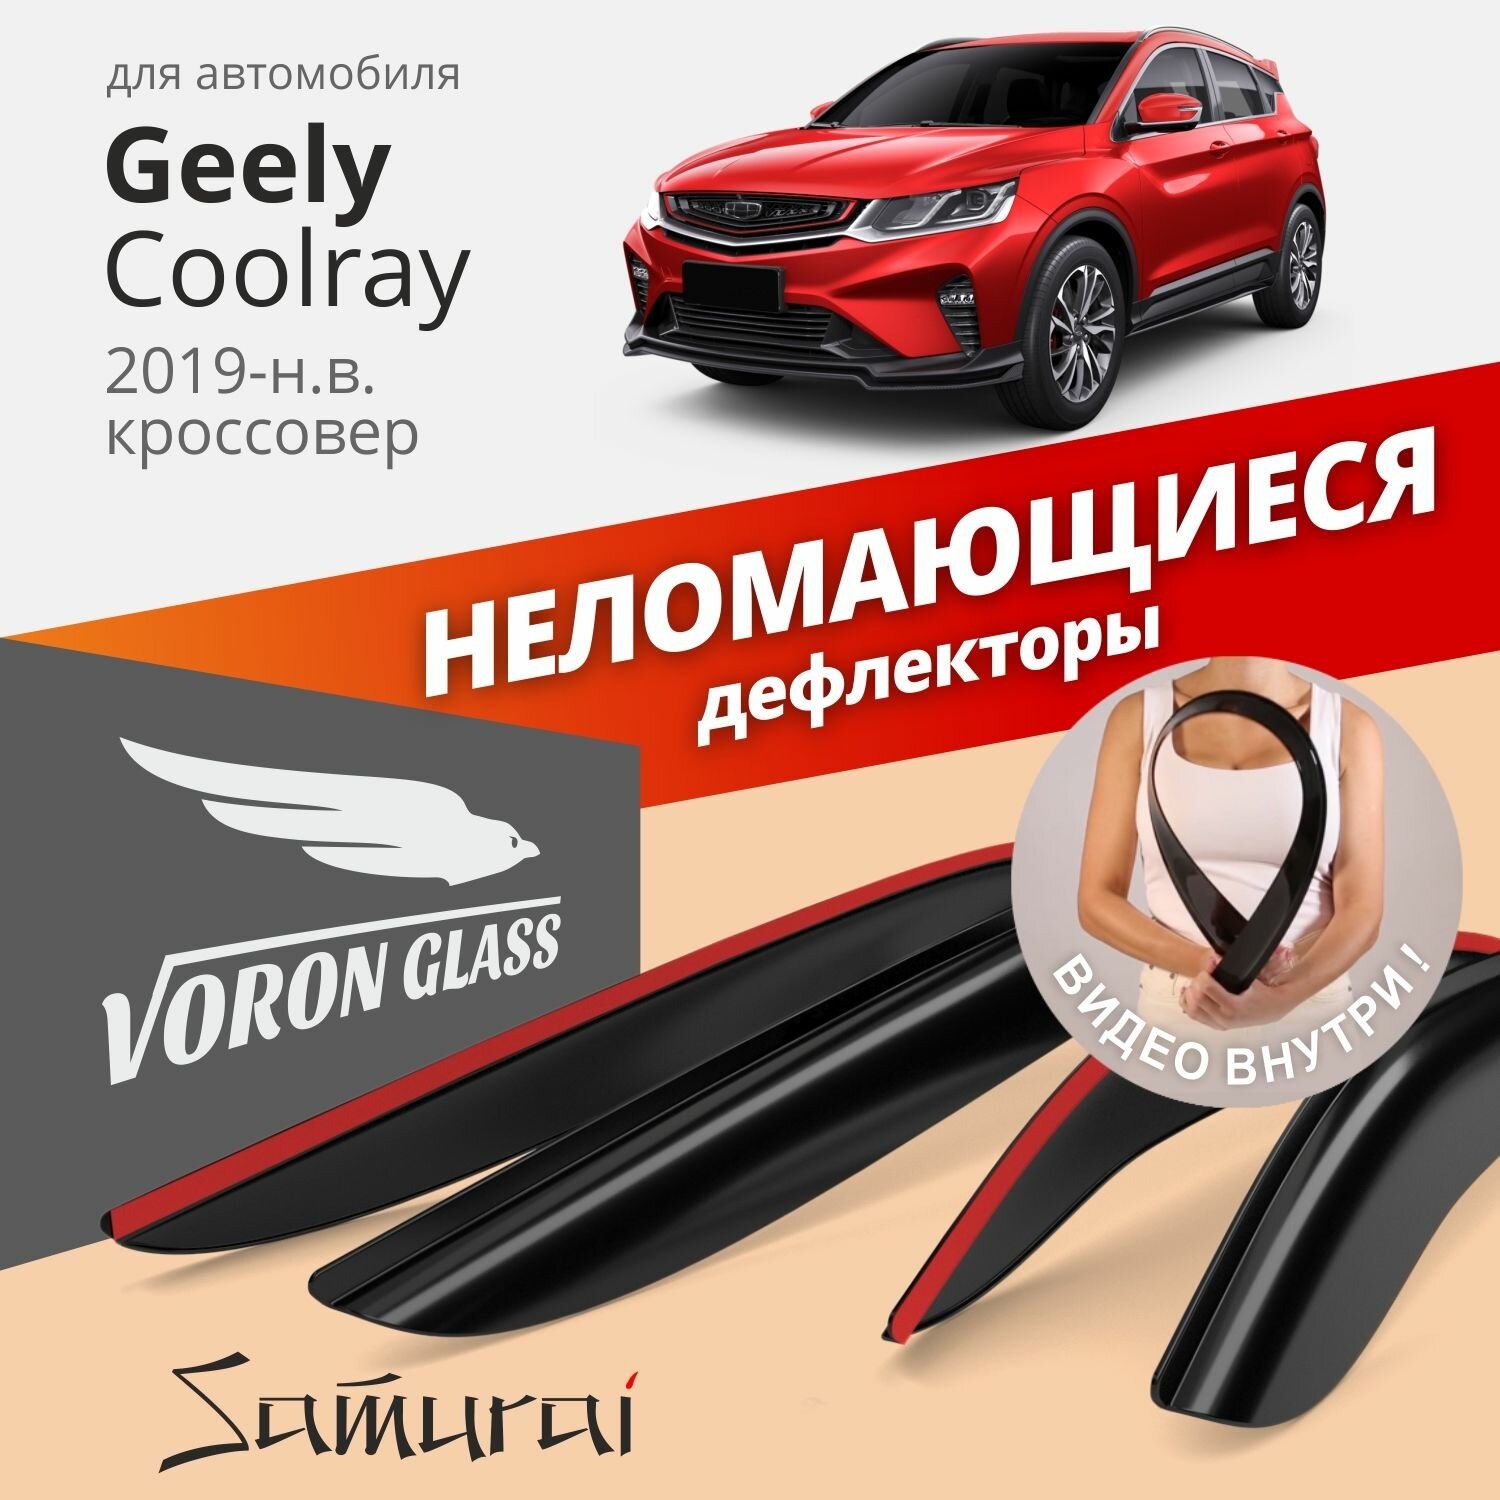 Дефлекторы окон неломающиеся Voron Glass серия Samurai для автомобиля Geely Coolray 19-н. в